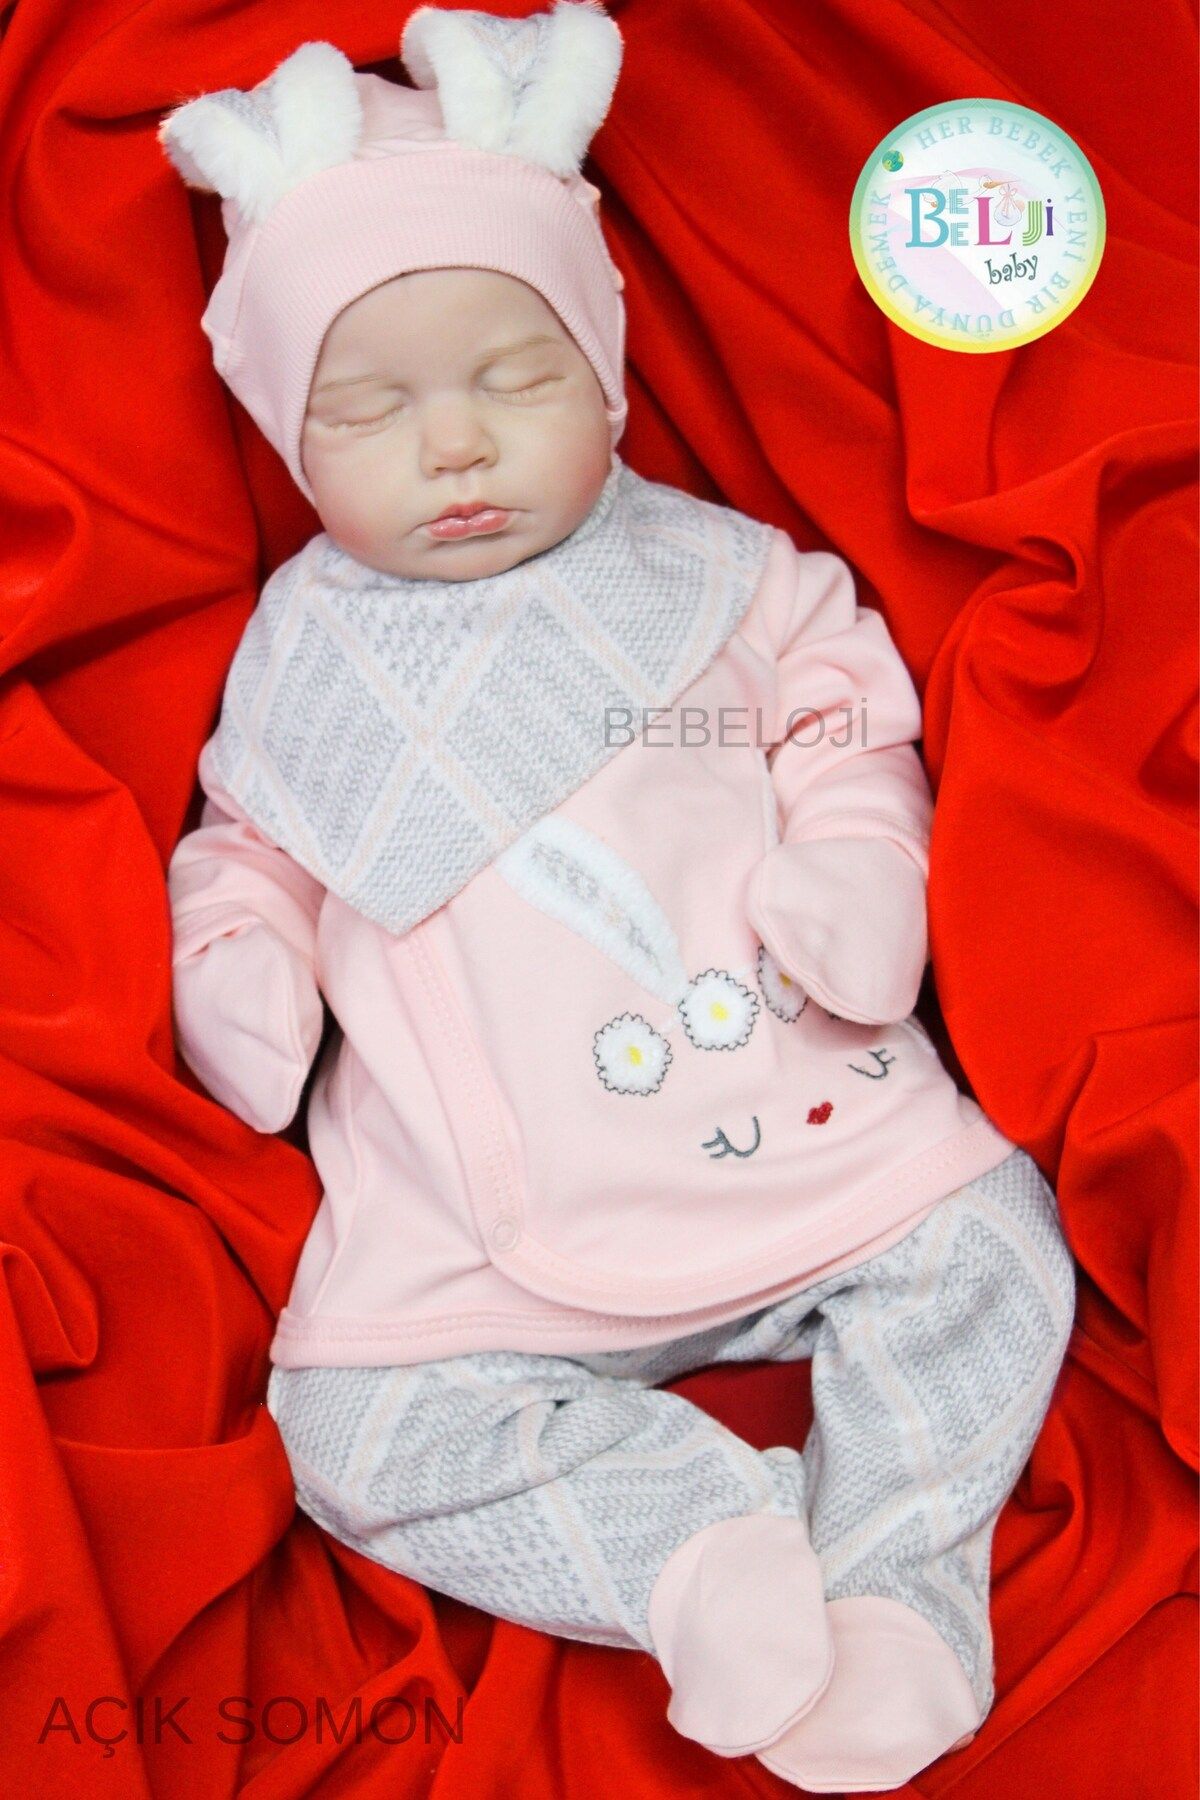 Bebeloji Baby Tavşanlı Kız Bebek Hastane Çıkışı 5'li Set Yenidoğan Kıyafeti kiz hastane cikisi